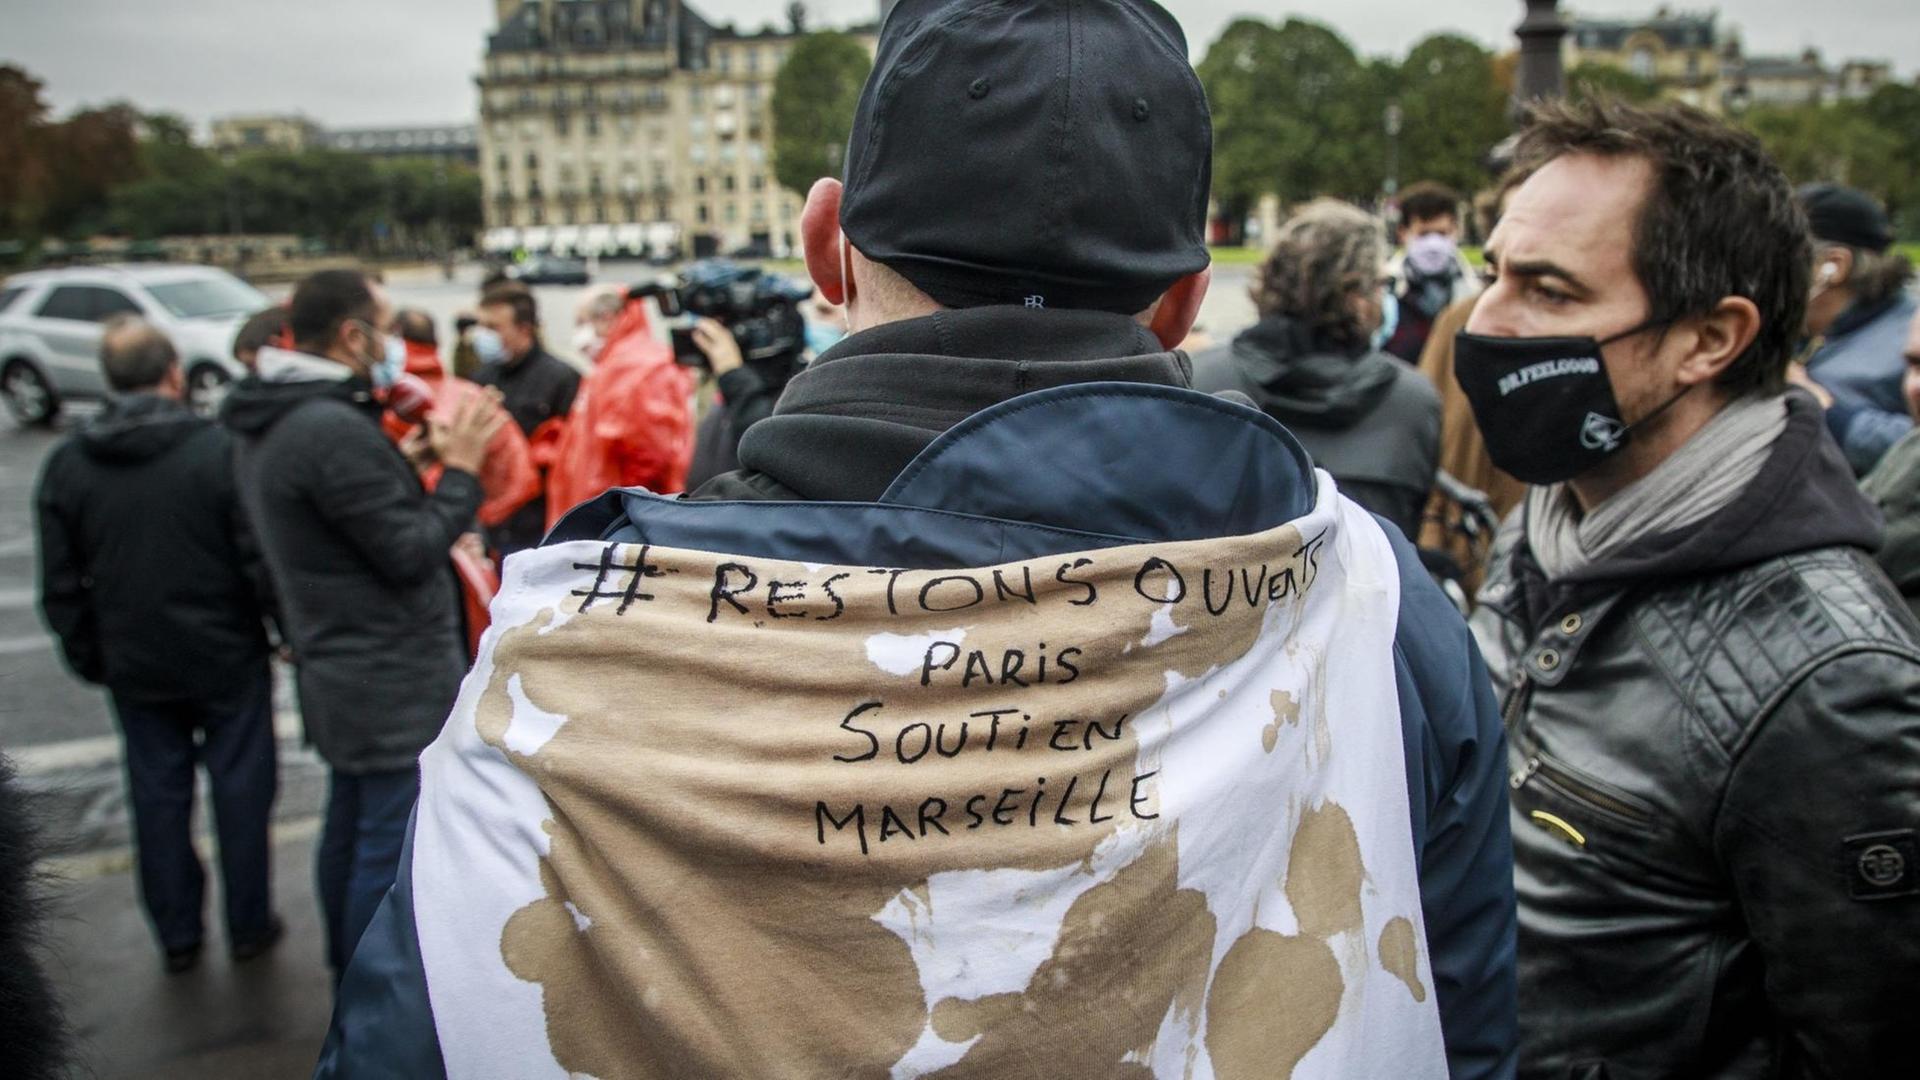 Ein Mann hat sich ein Spruchband mit der Aufschrift "Restons ouverts - Paris soutin Marseilles" umgehängt ("Bleiben wir offen - Paris unterstützt Marseille")